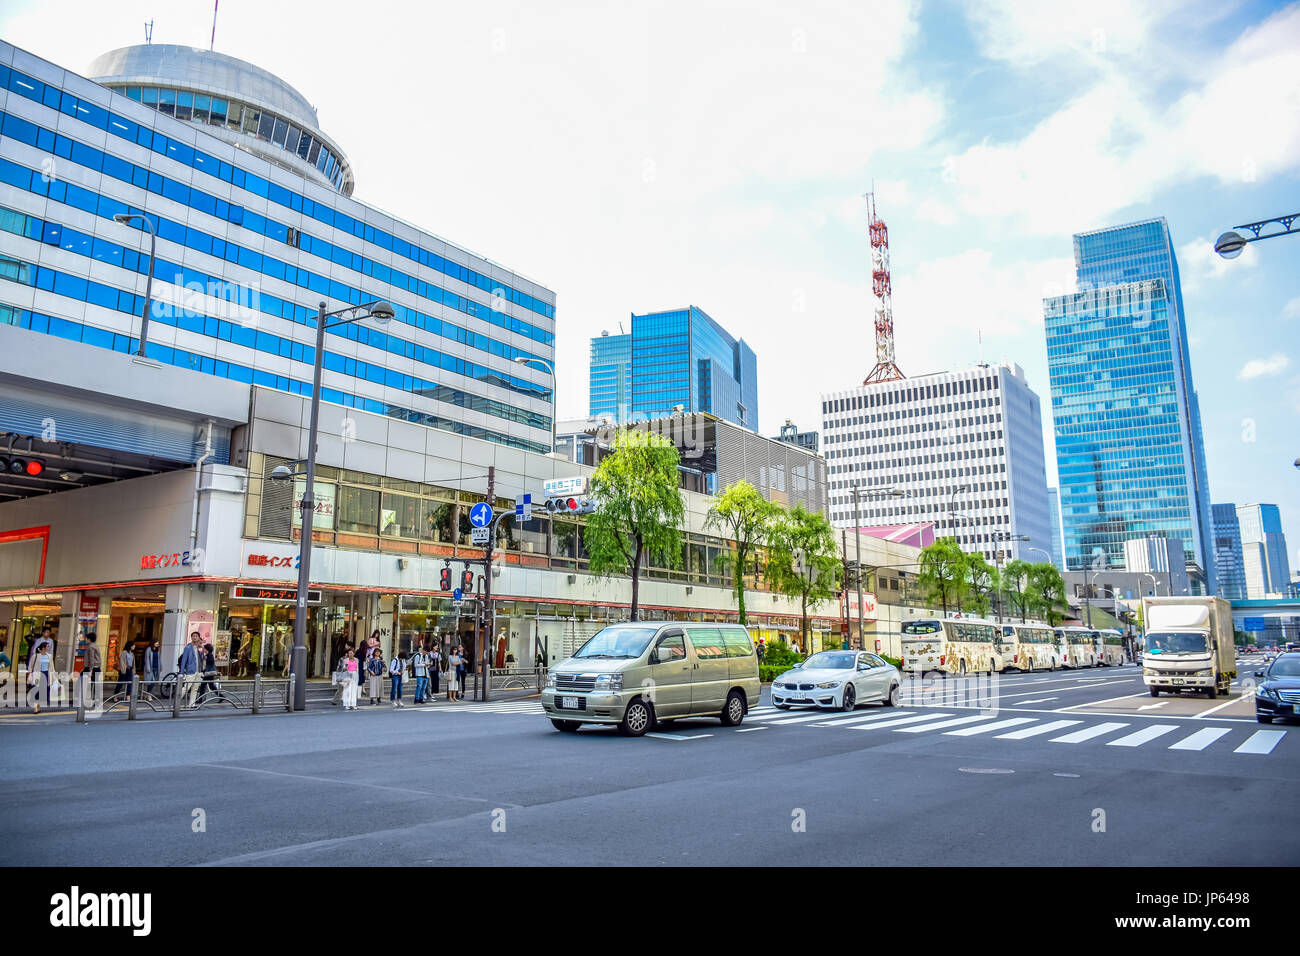 TOKYO, GIAPPONE - Maggio 15: Le persone che trascorrono il loro tempo visitando Ginza Street, una zona molto popolare dello shopping di Tokyo, durante il fine settimana. Foto Stock